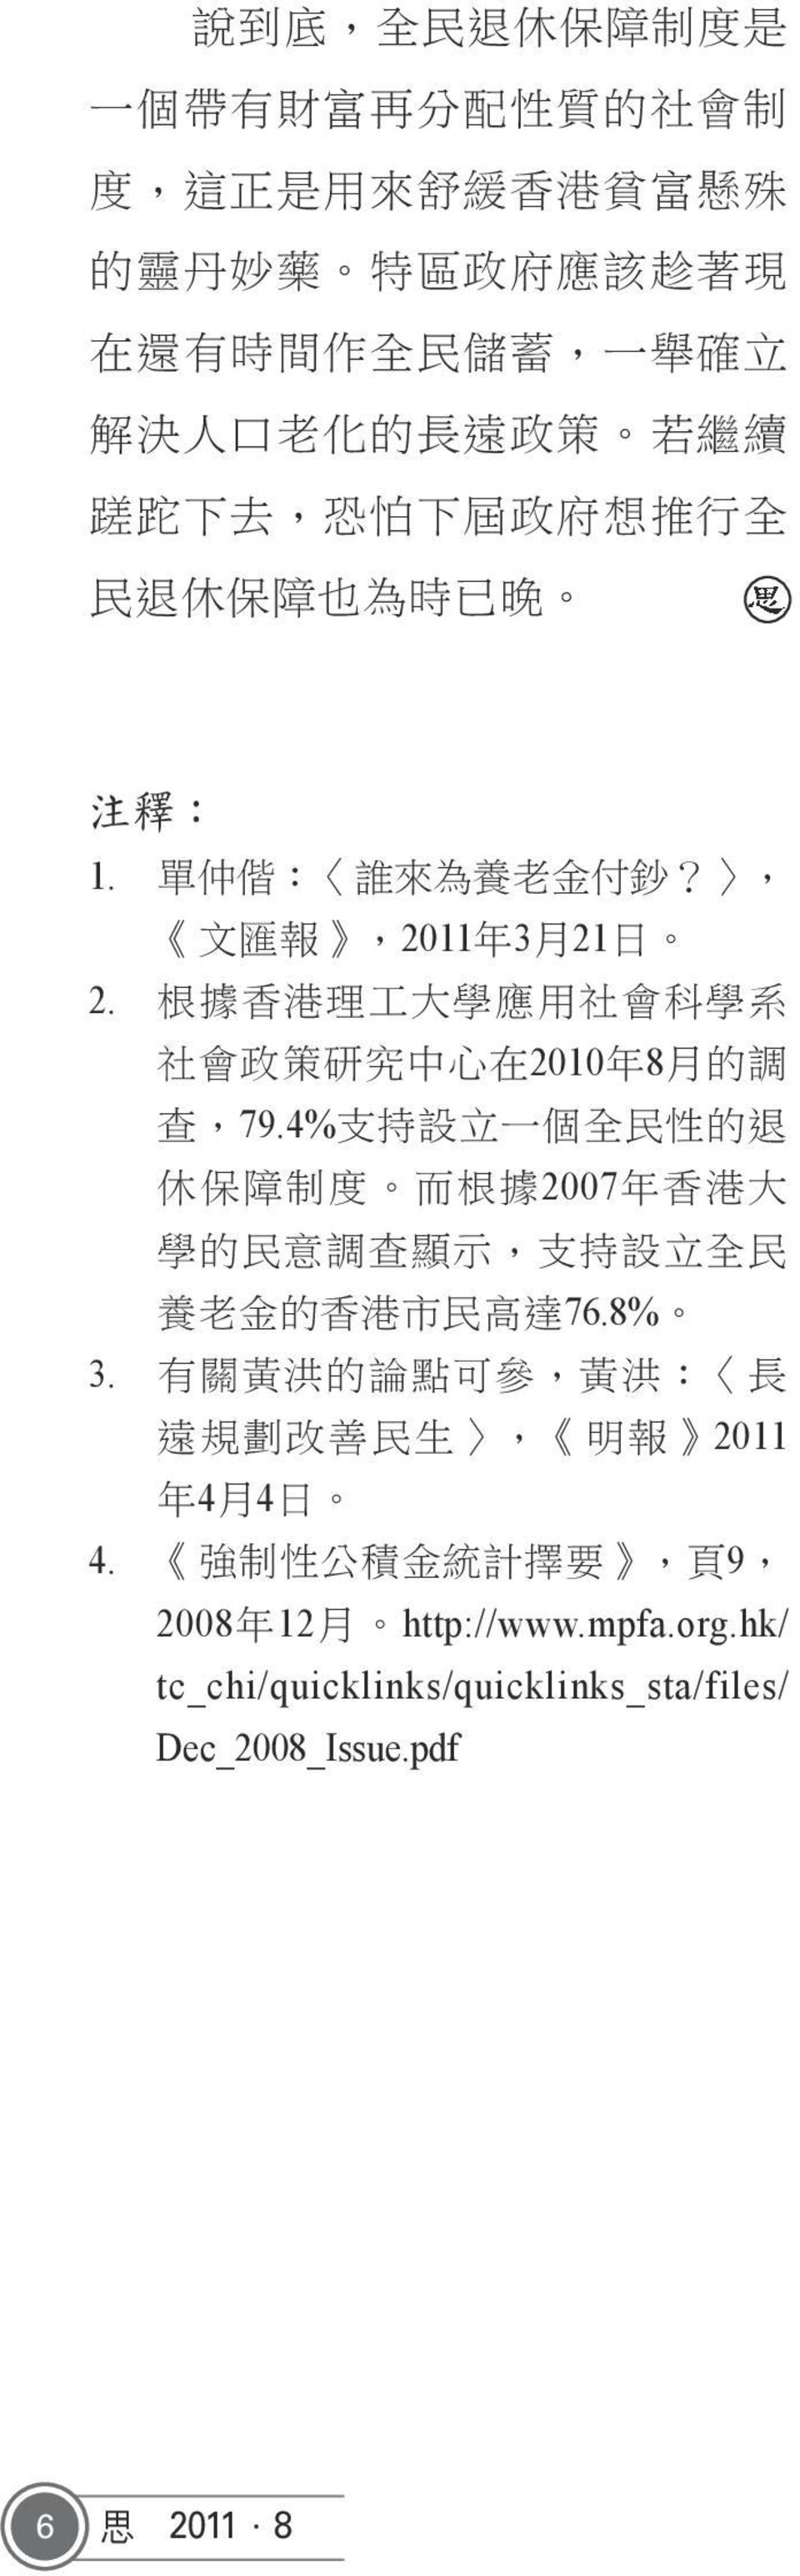 根 據 香 港 理 工 大 學 應 用 社 會 科 學 系 社 會 政 策 研 究 中 心 在 2010 年 8 月 的 調 查,79.